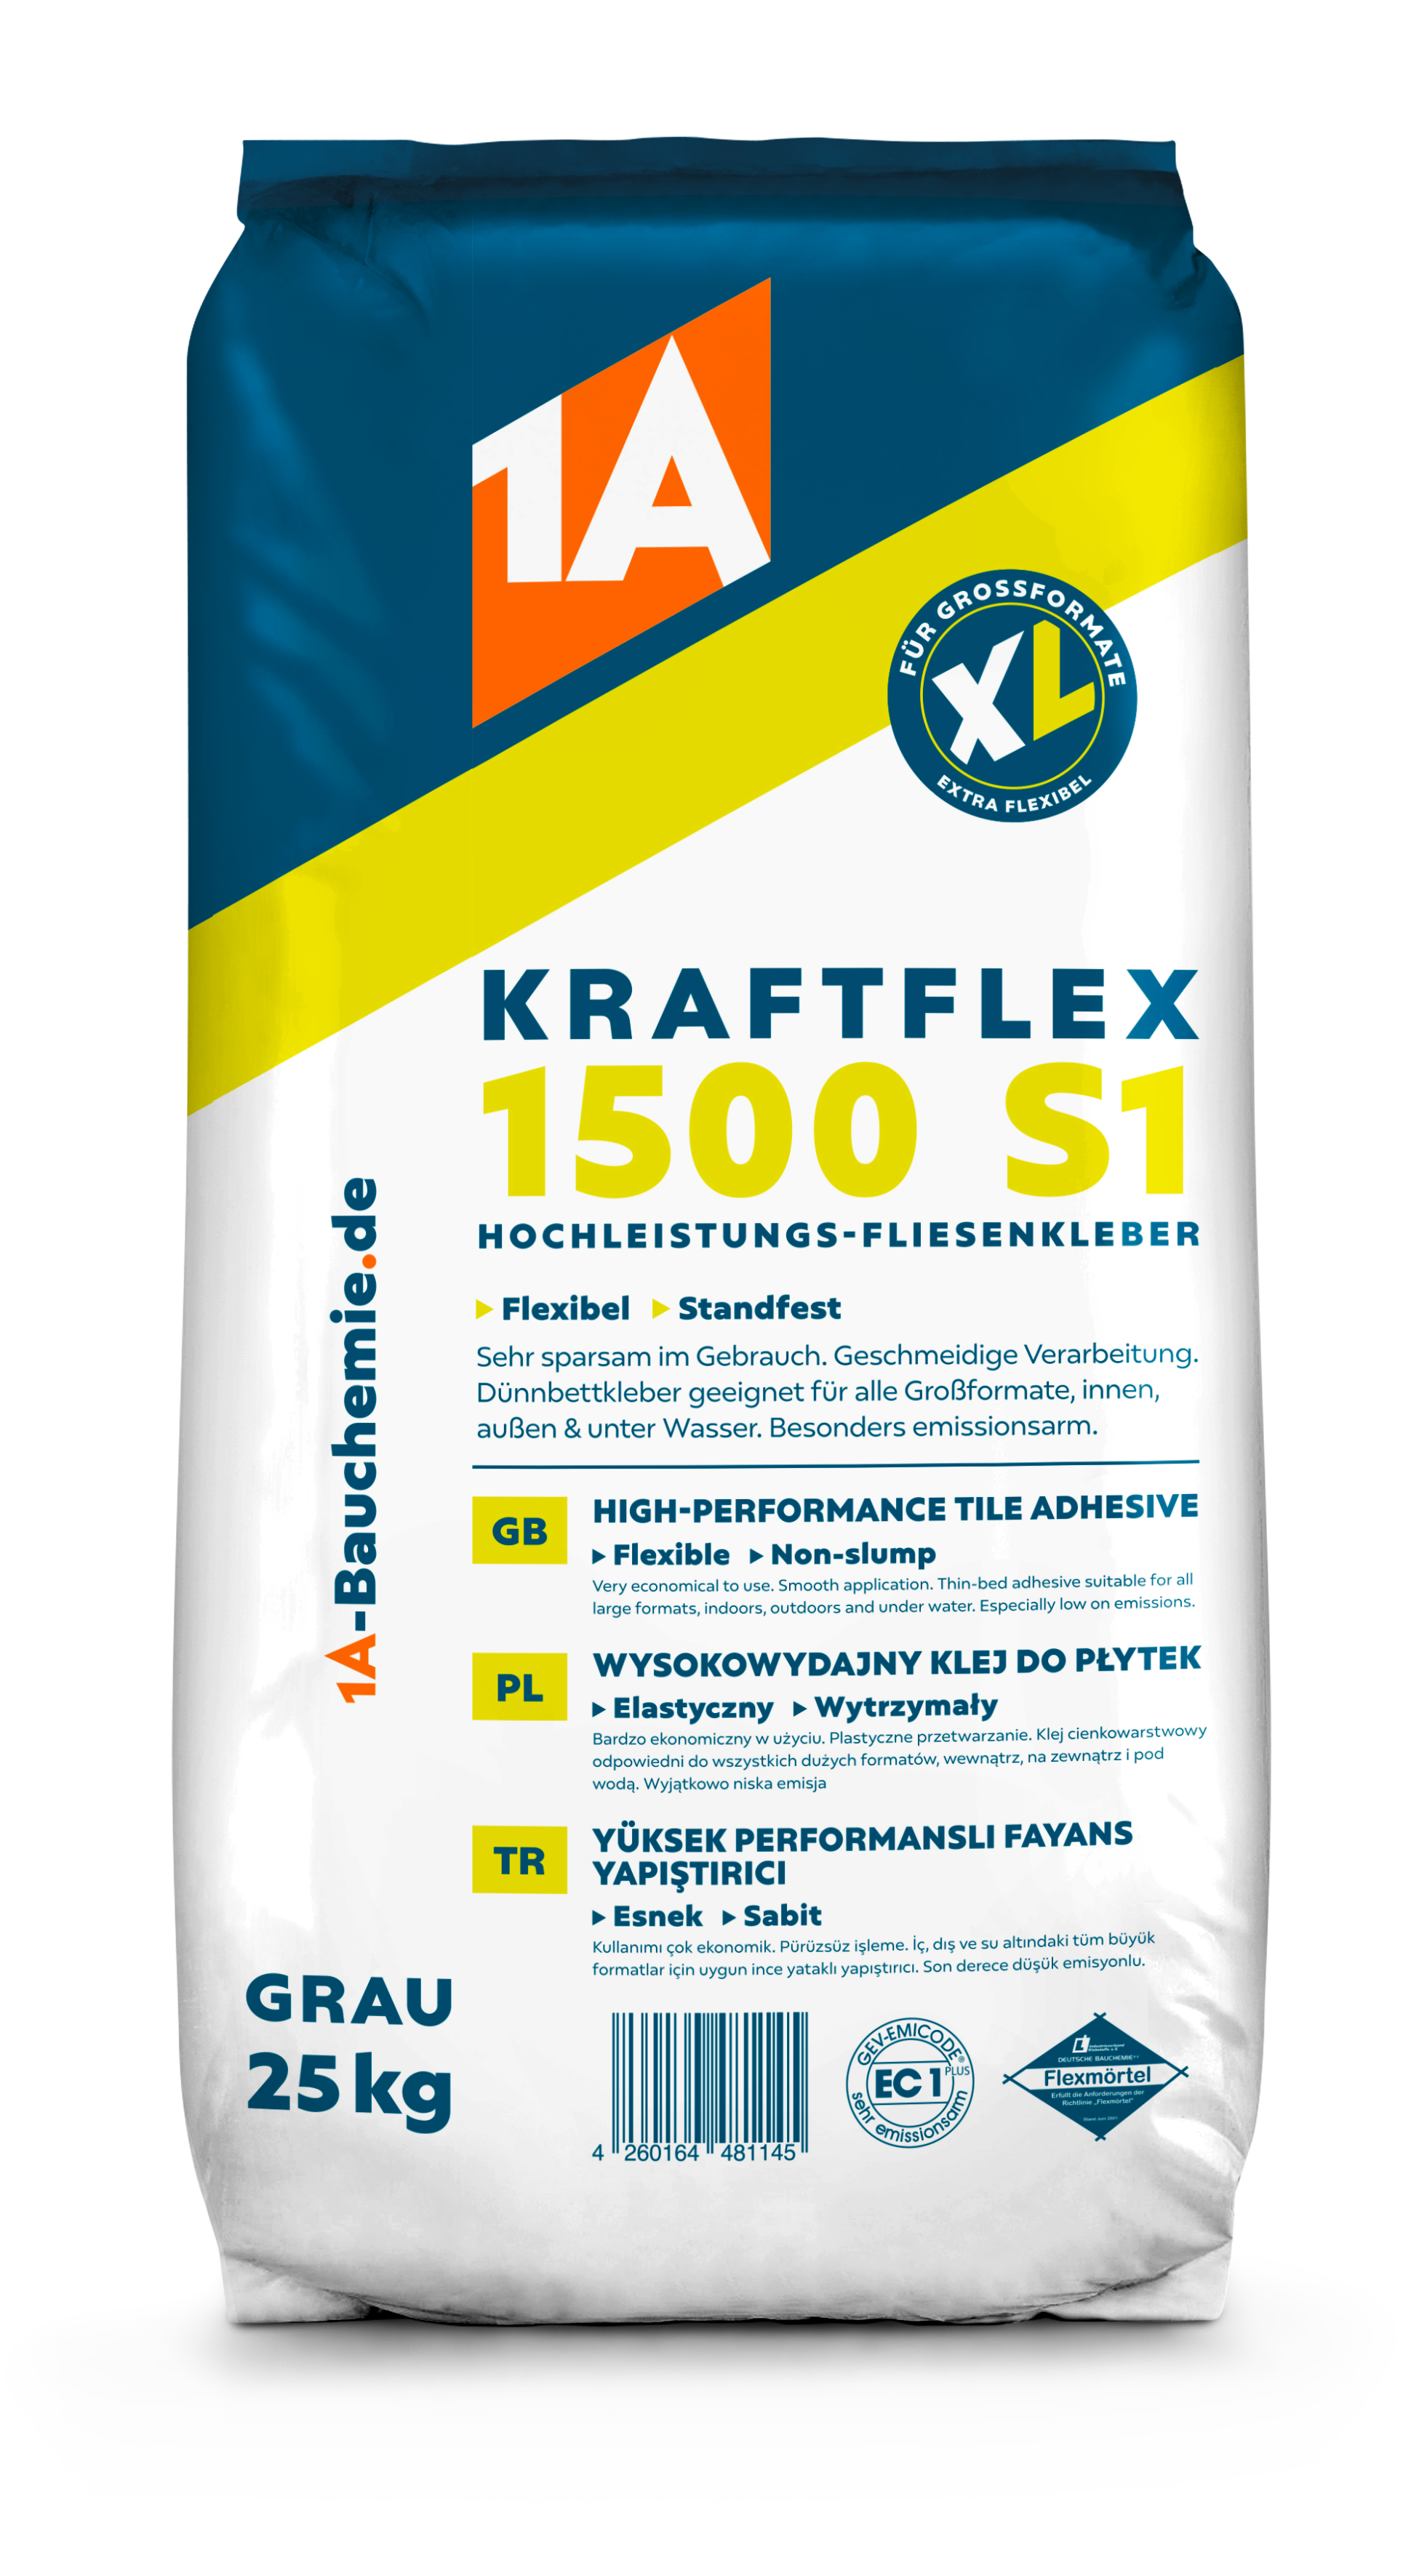 1A KRAFTFLEX 1500 S1